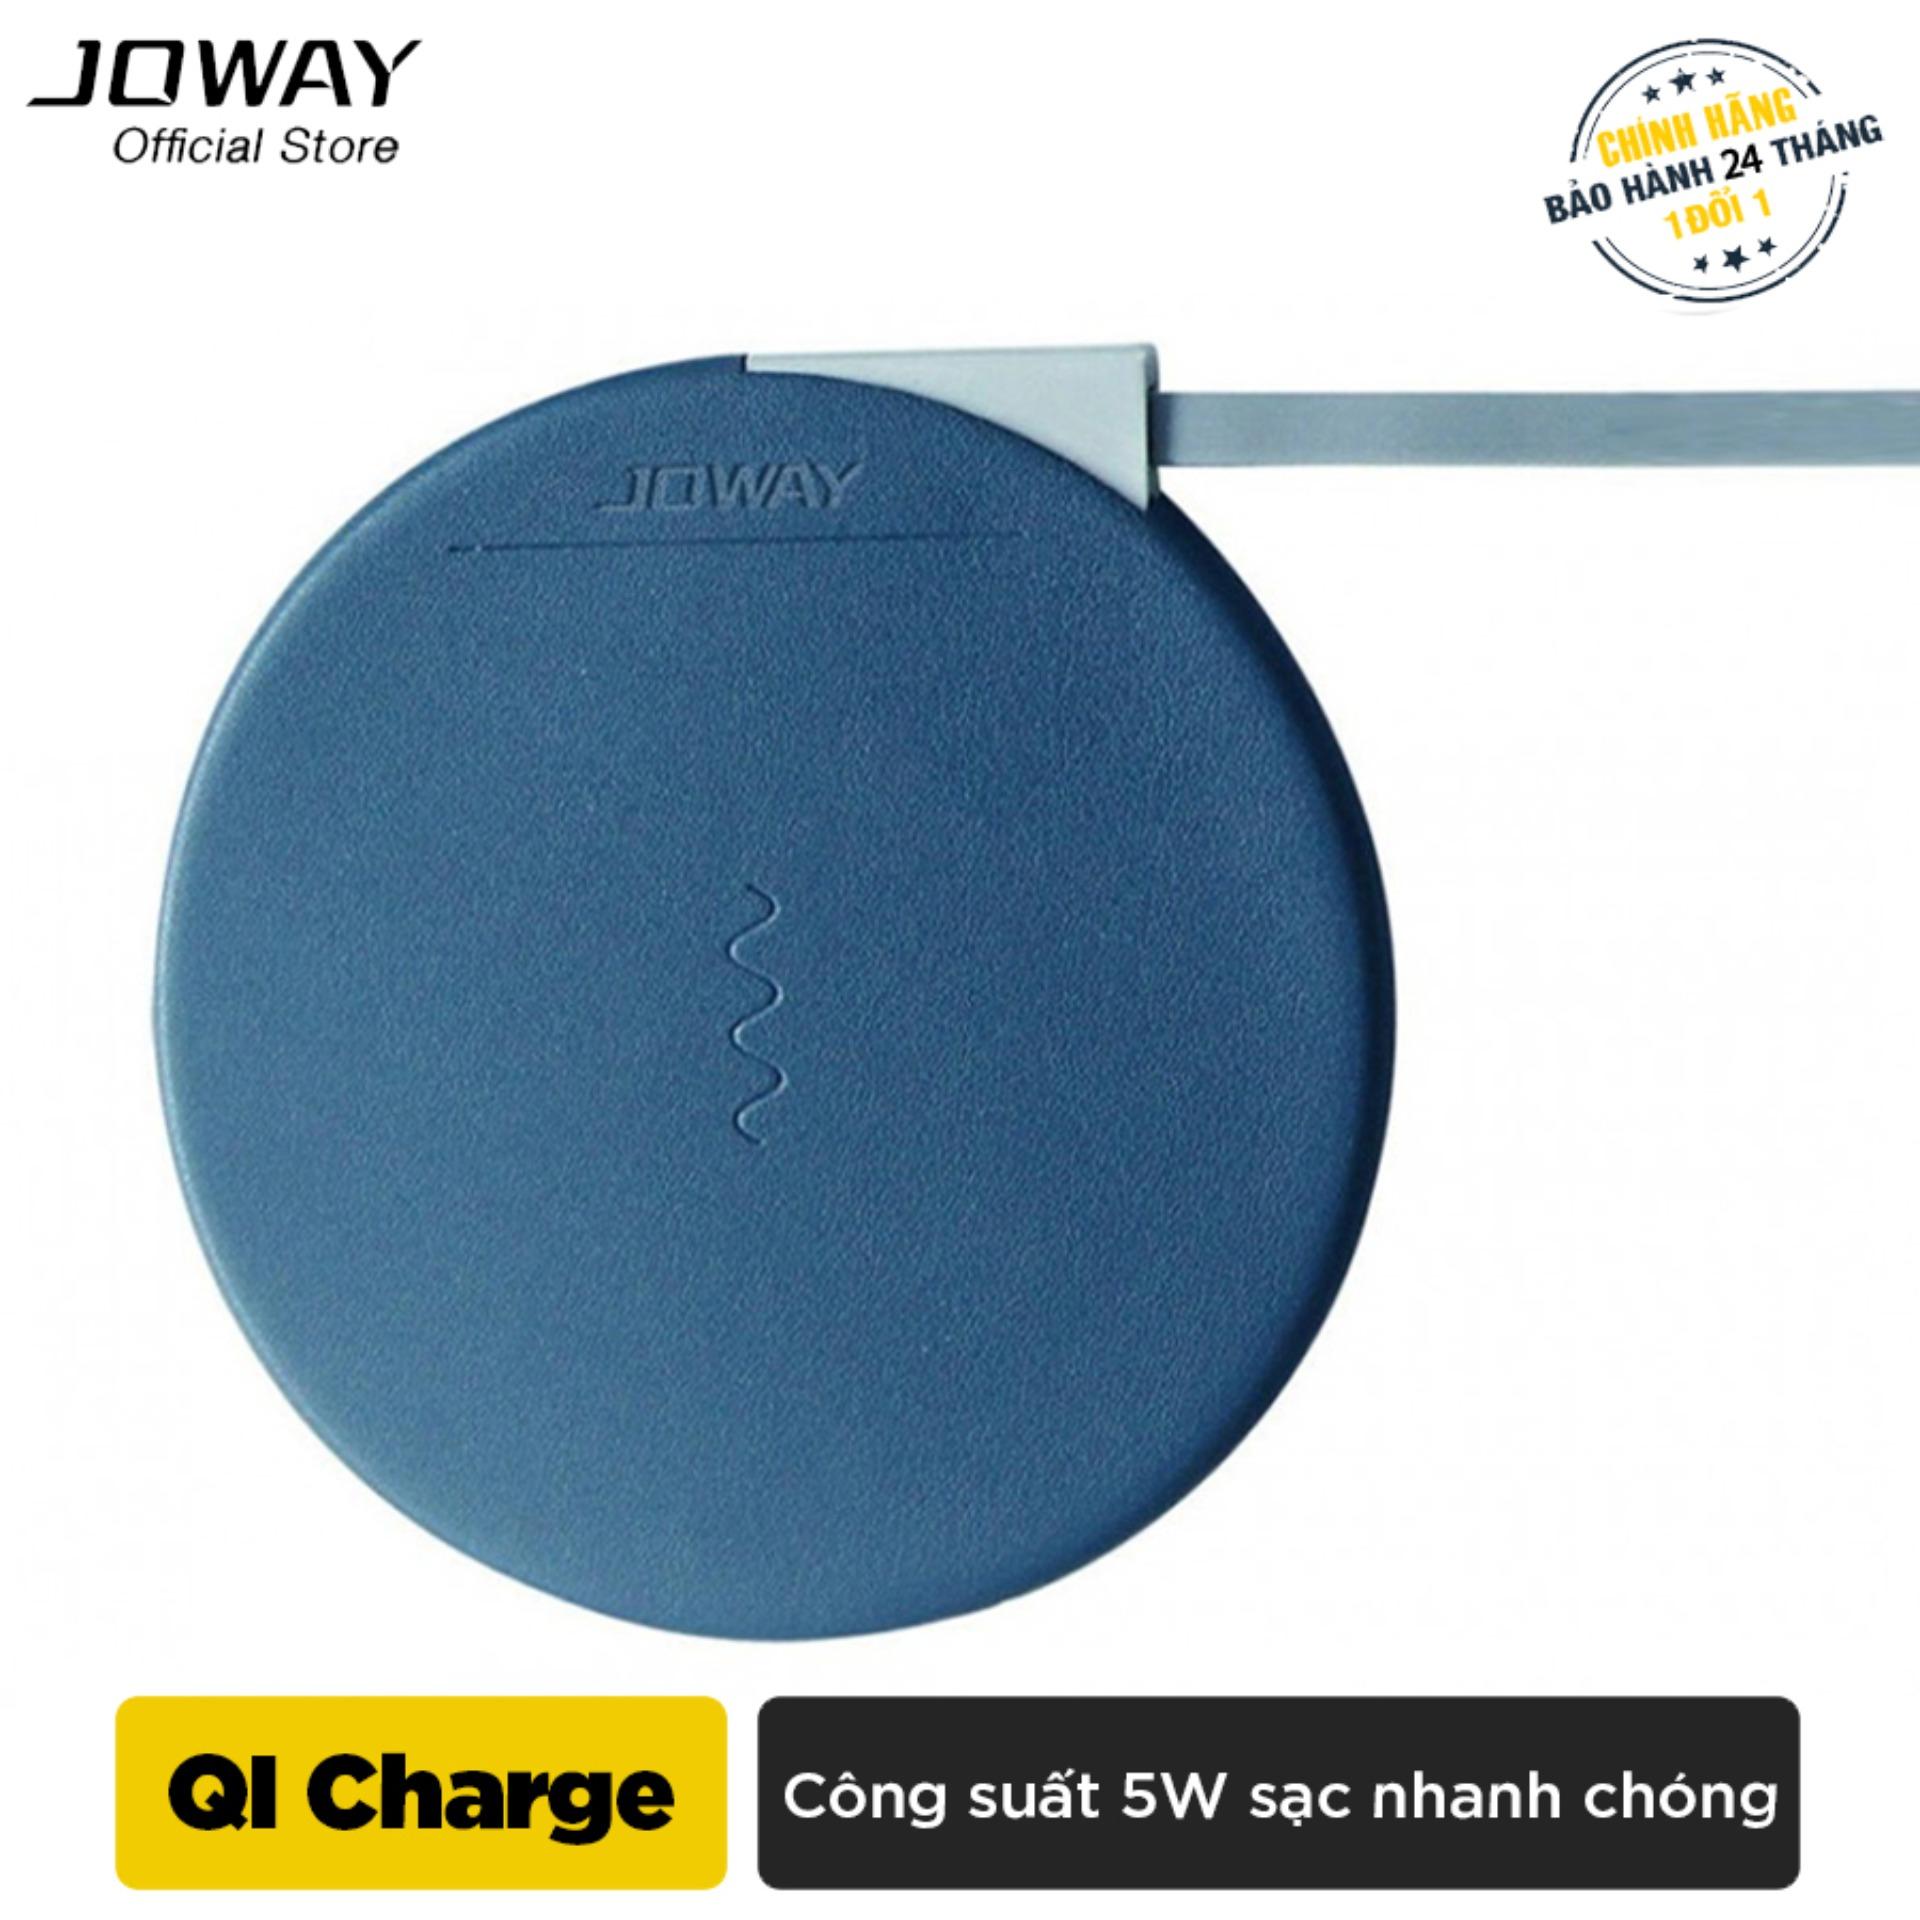 Sạc không dây Joway WXC02 Chuẩn QI cho iphone8/8plus, iphone X, Android - Hãng phân phối chính thức